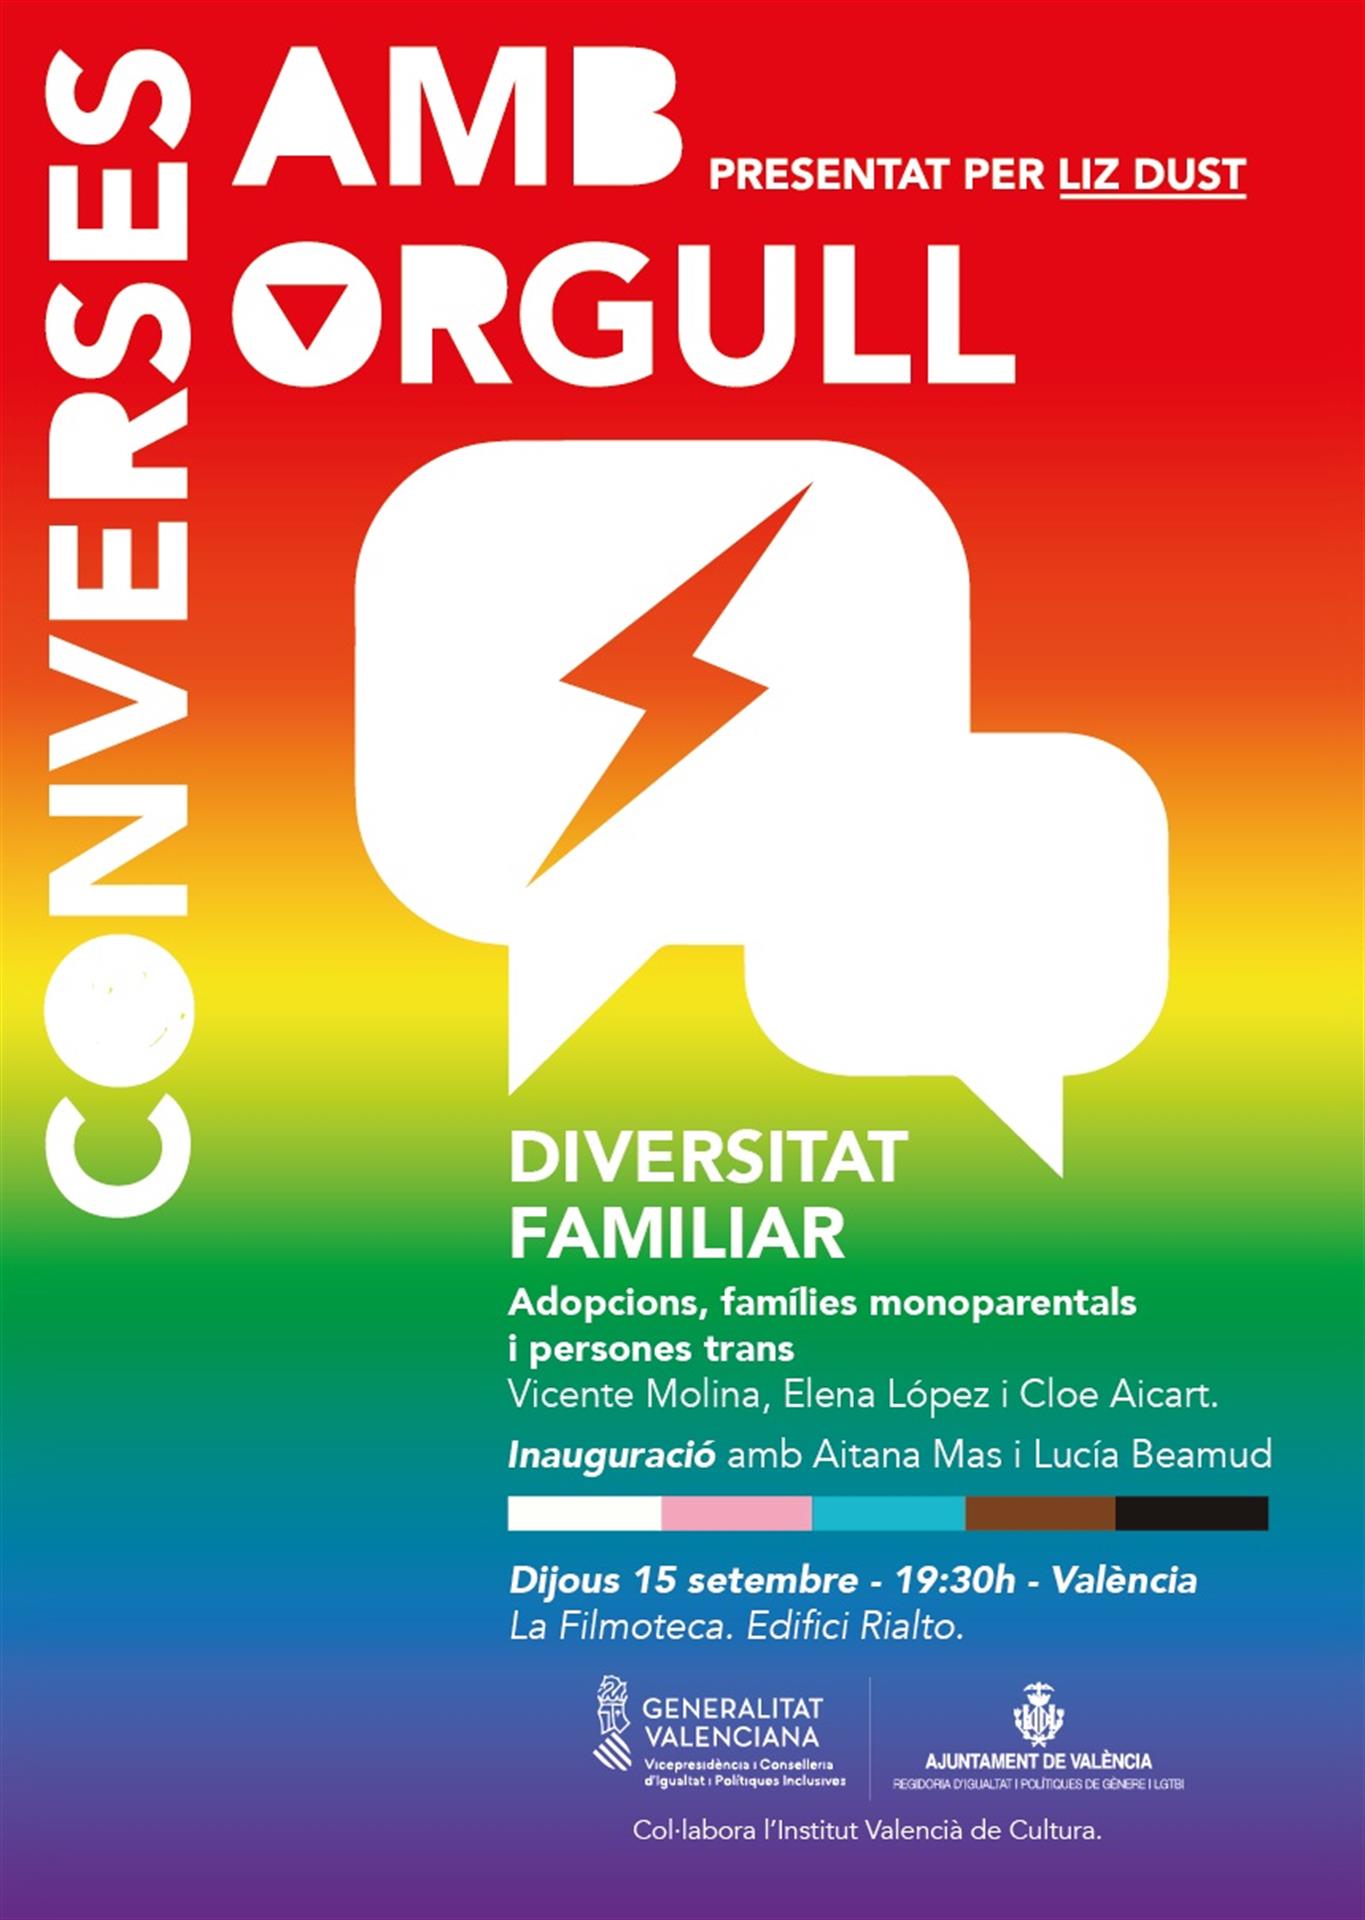 Imagen de un cartel anunciador de las charlas, facilitado por la Generalitat.